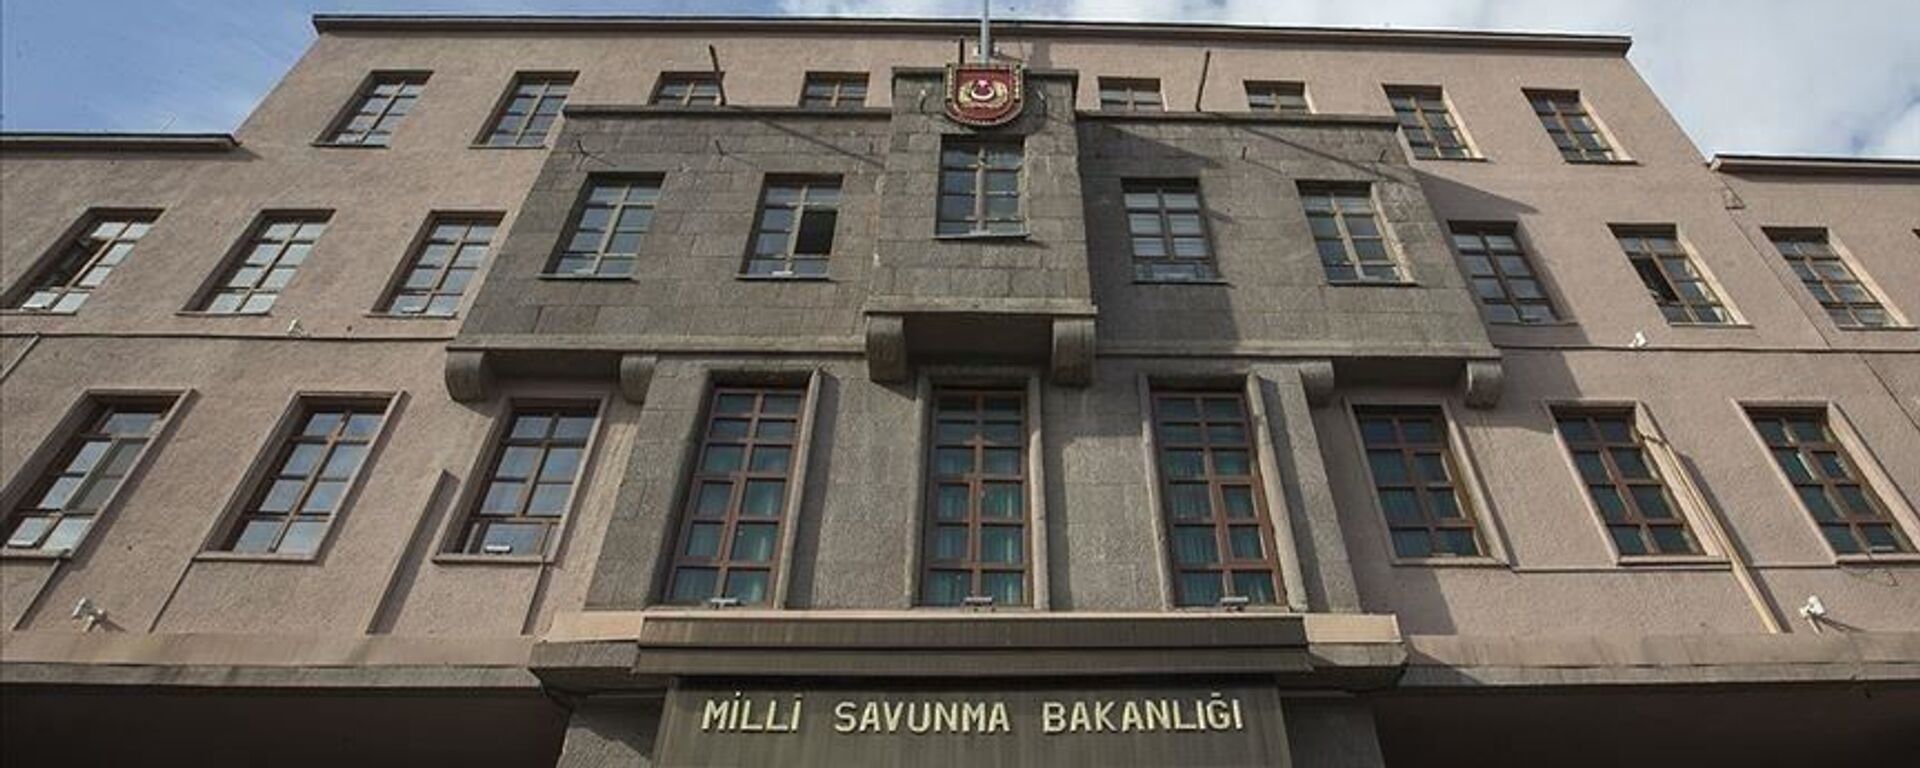 Milli Savunma Bakanlığı - Sputnik Türkiye, 1920, 29.07.2021